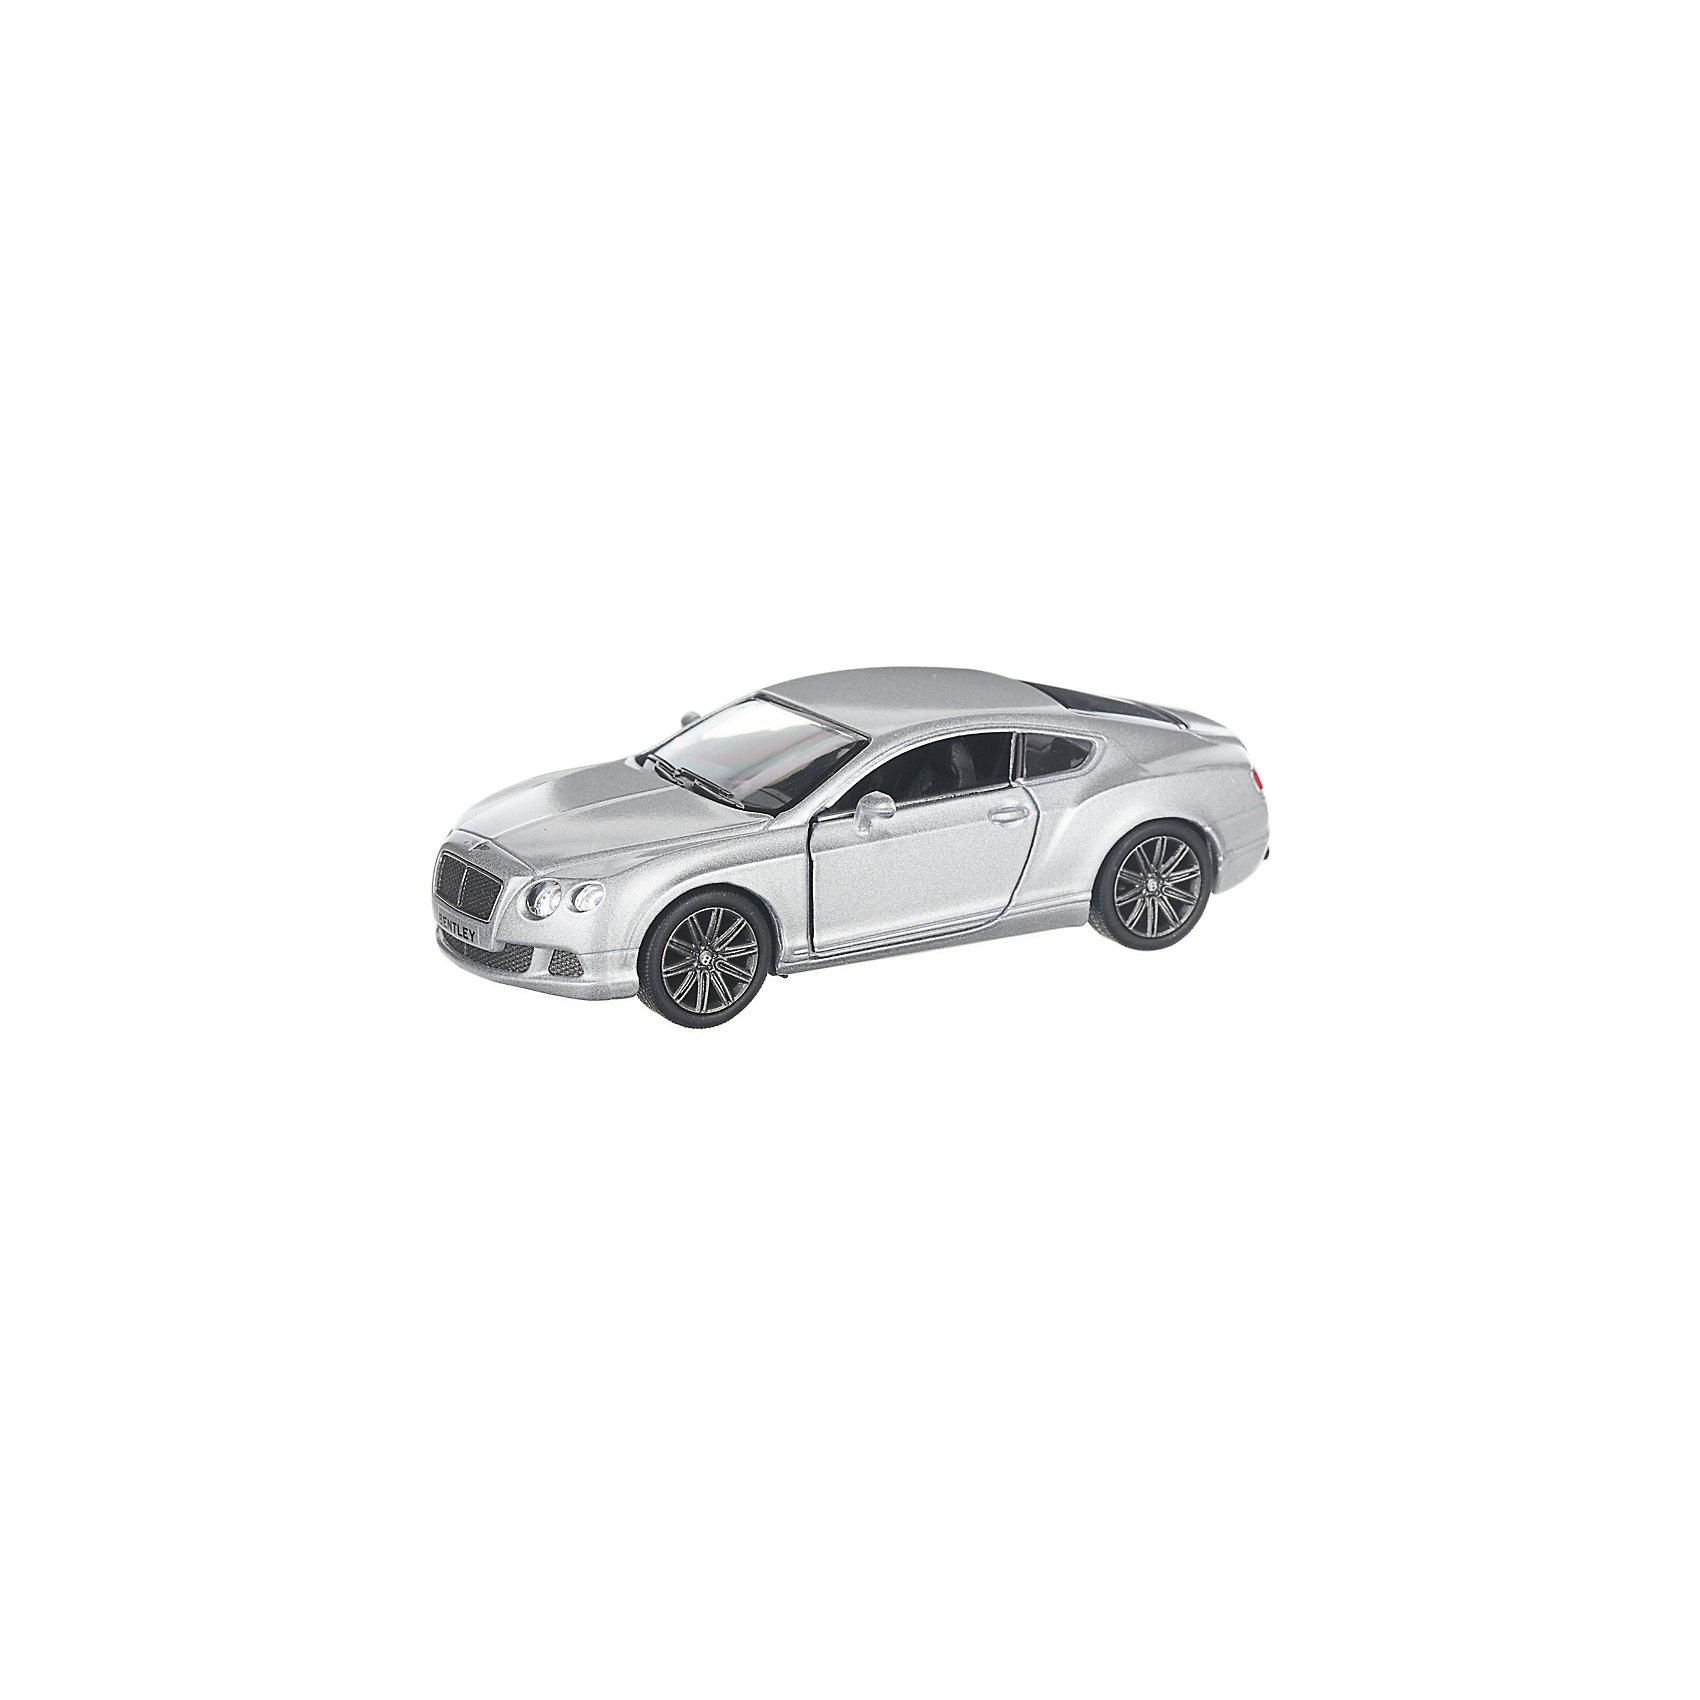 Коллекционная машинка 2012 Bentley Continental GT, серебристая Serinity Toys 13233282